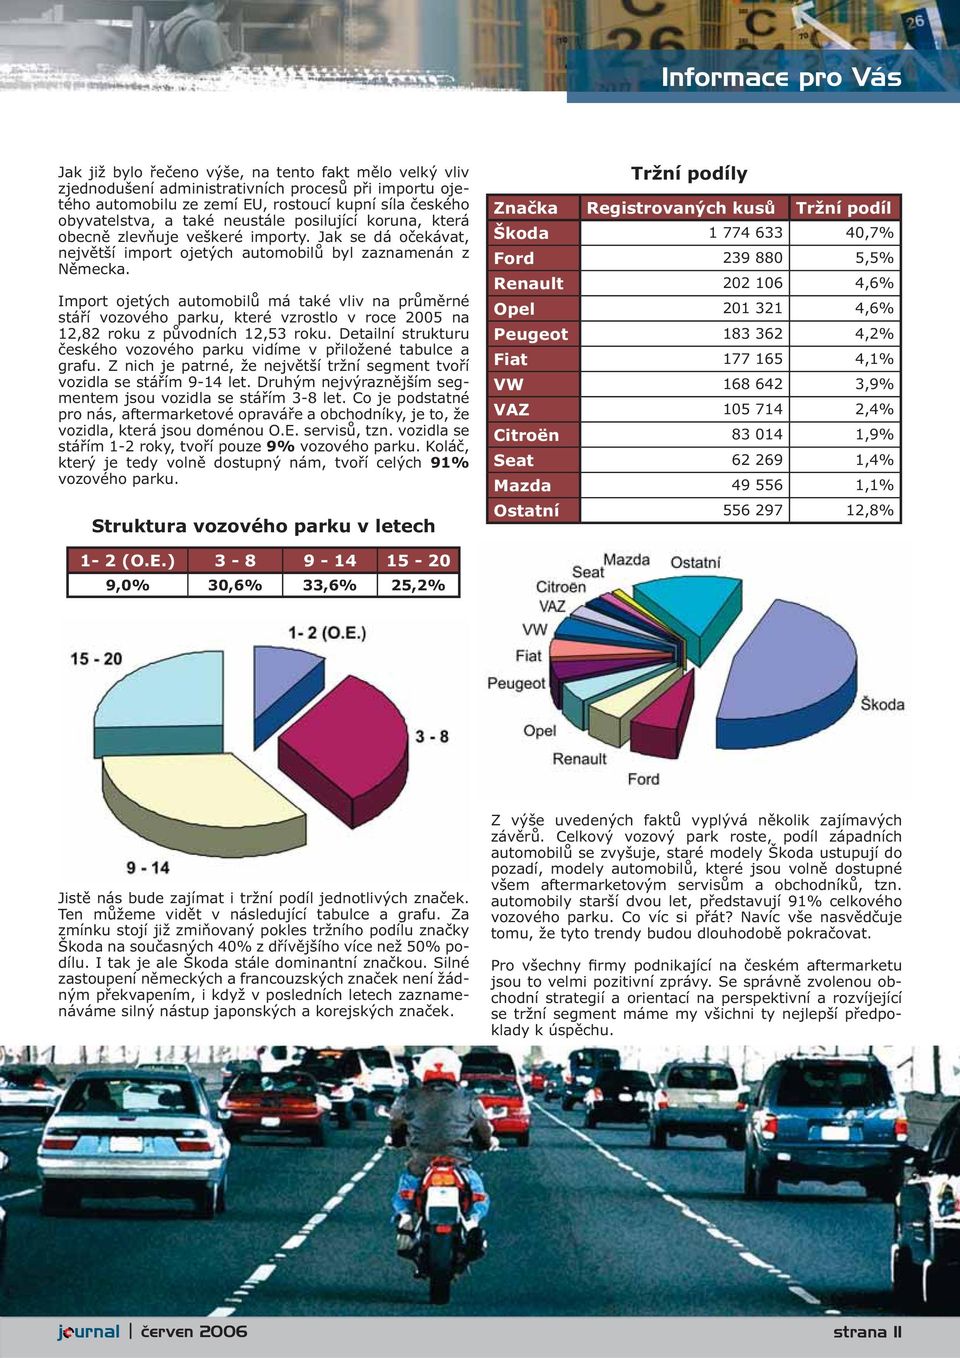 Import ojetých automobilů má také vliv na průměrné stáří vozového parku, které vzrostlo v roce 2005 na 12,82 roku z původních 12,53 roku.